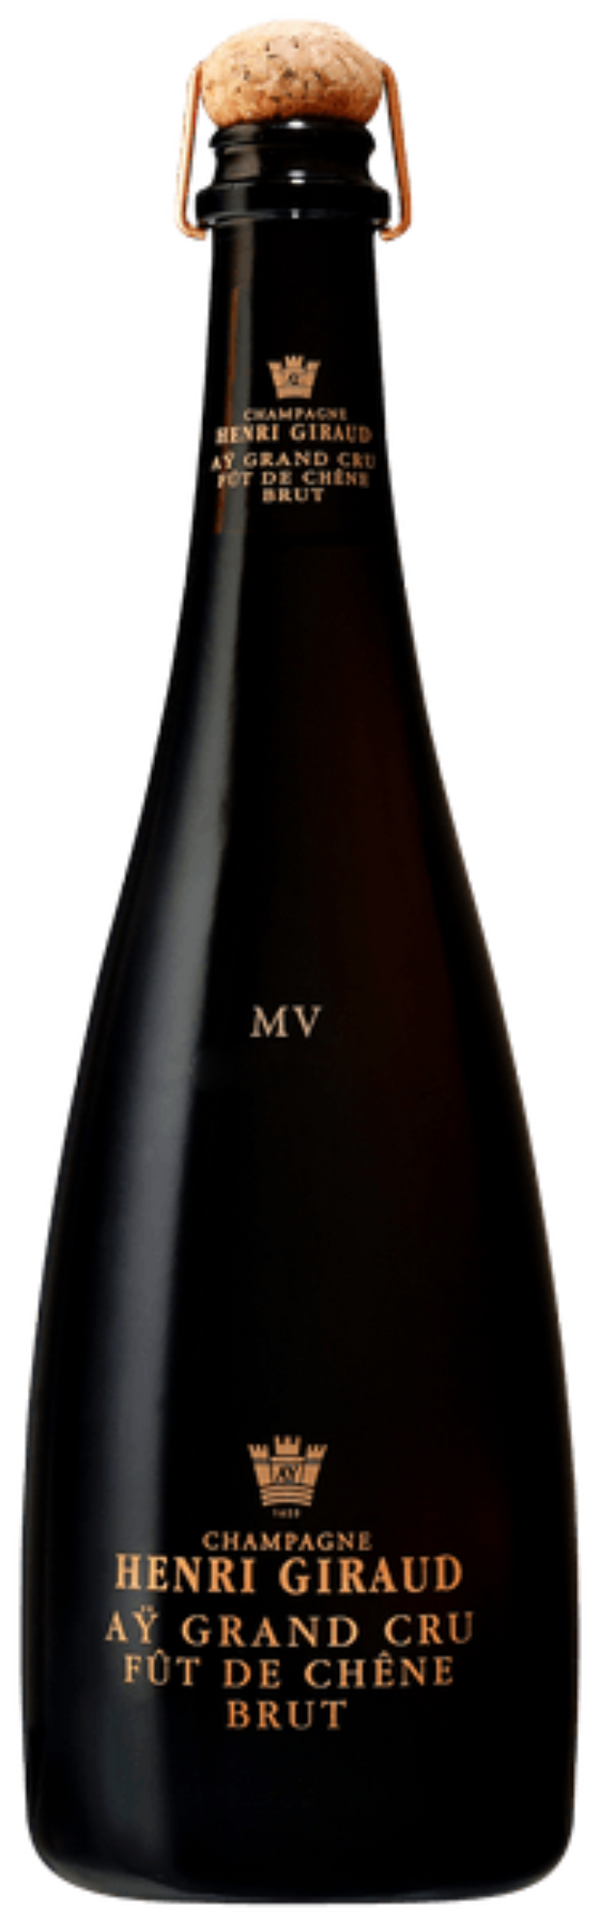 Champagne Henri Giraud Aÿ Grand Cru Brut Fût de Chêne MV17